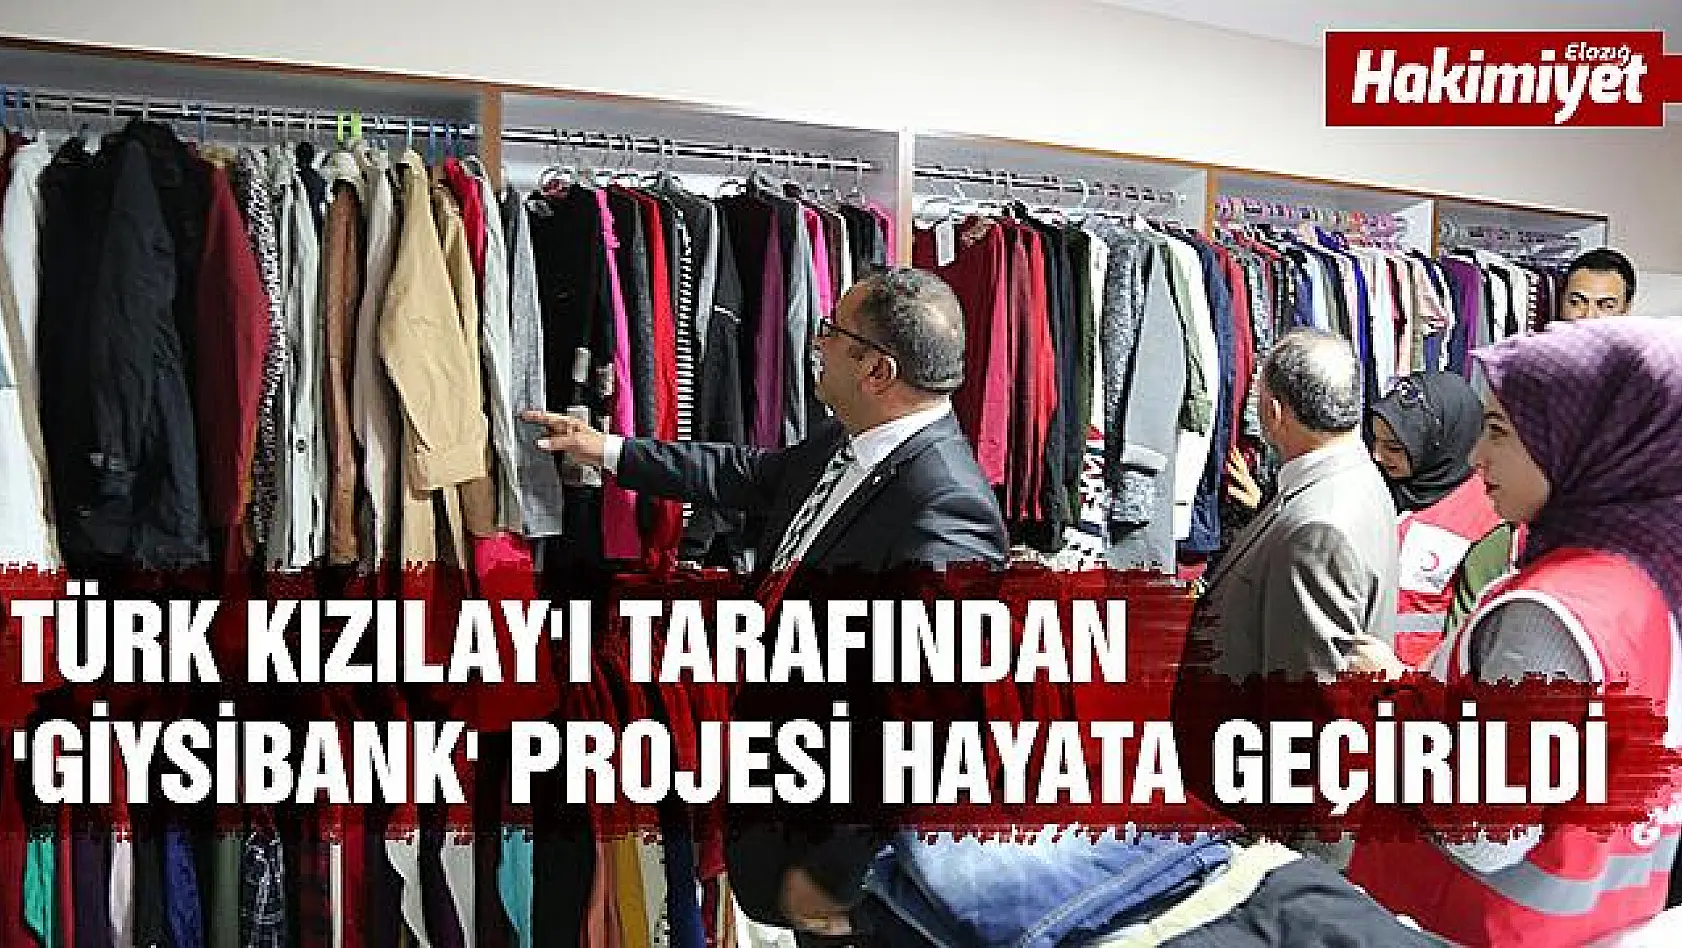 Tunceli' de 'Giysibank' projesi